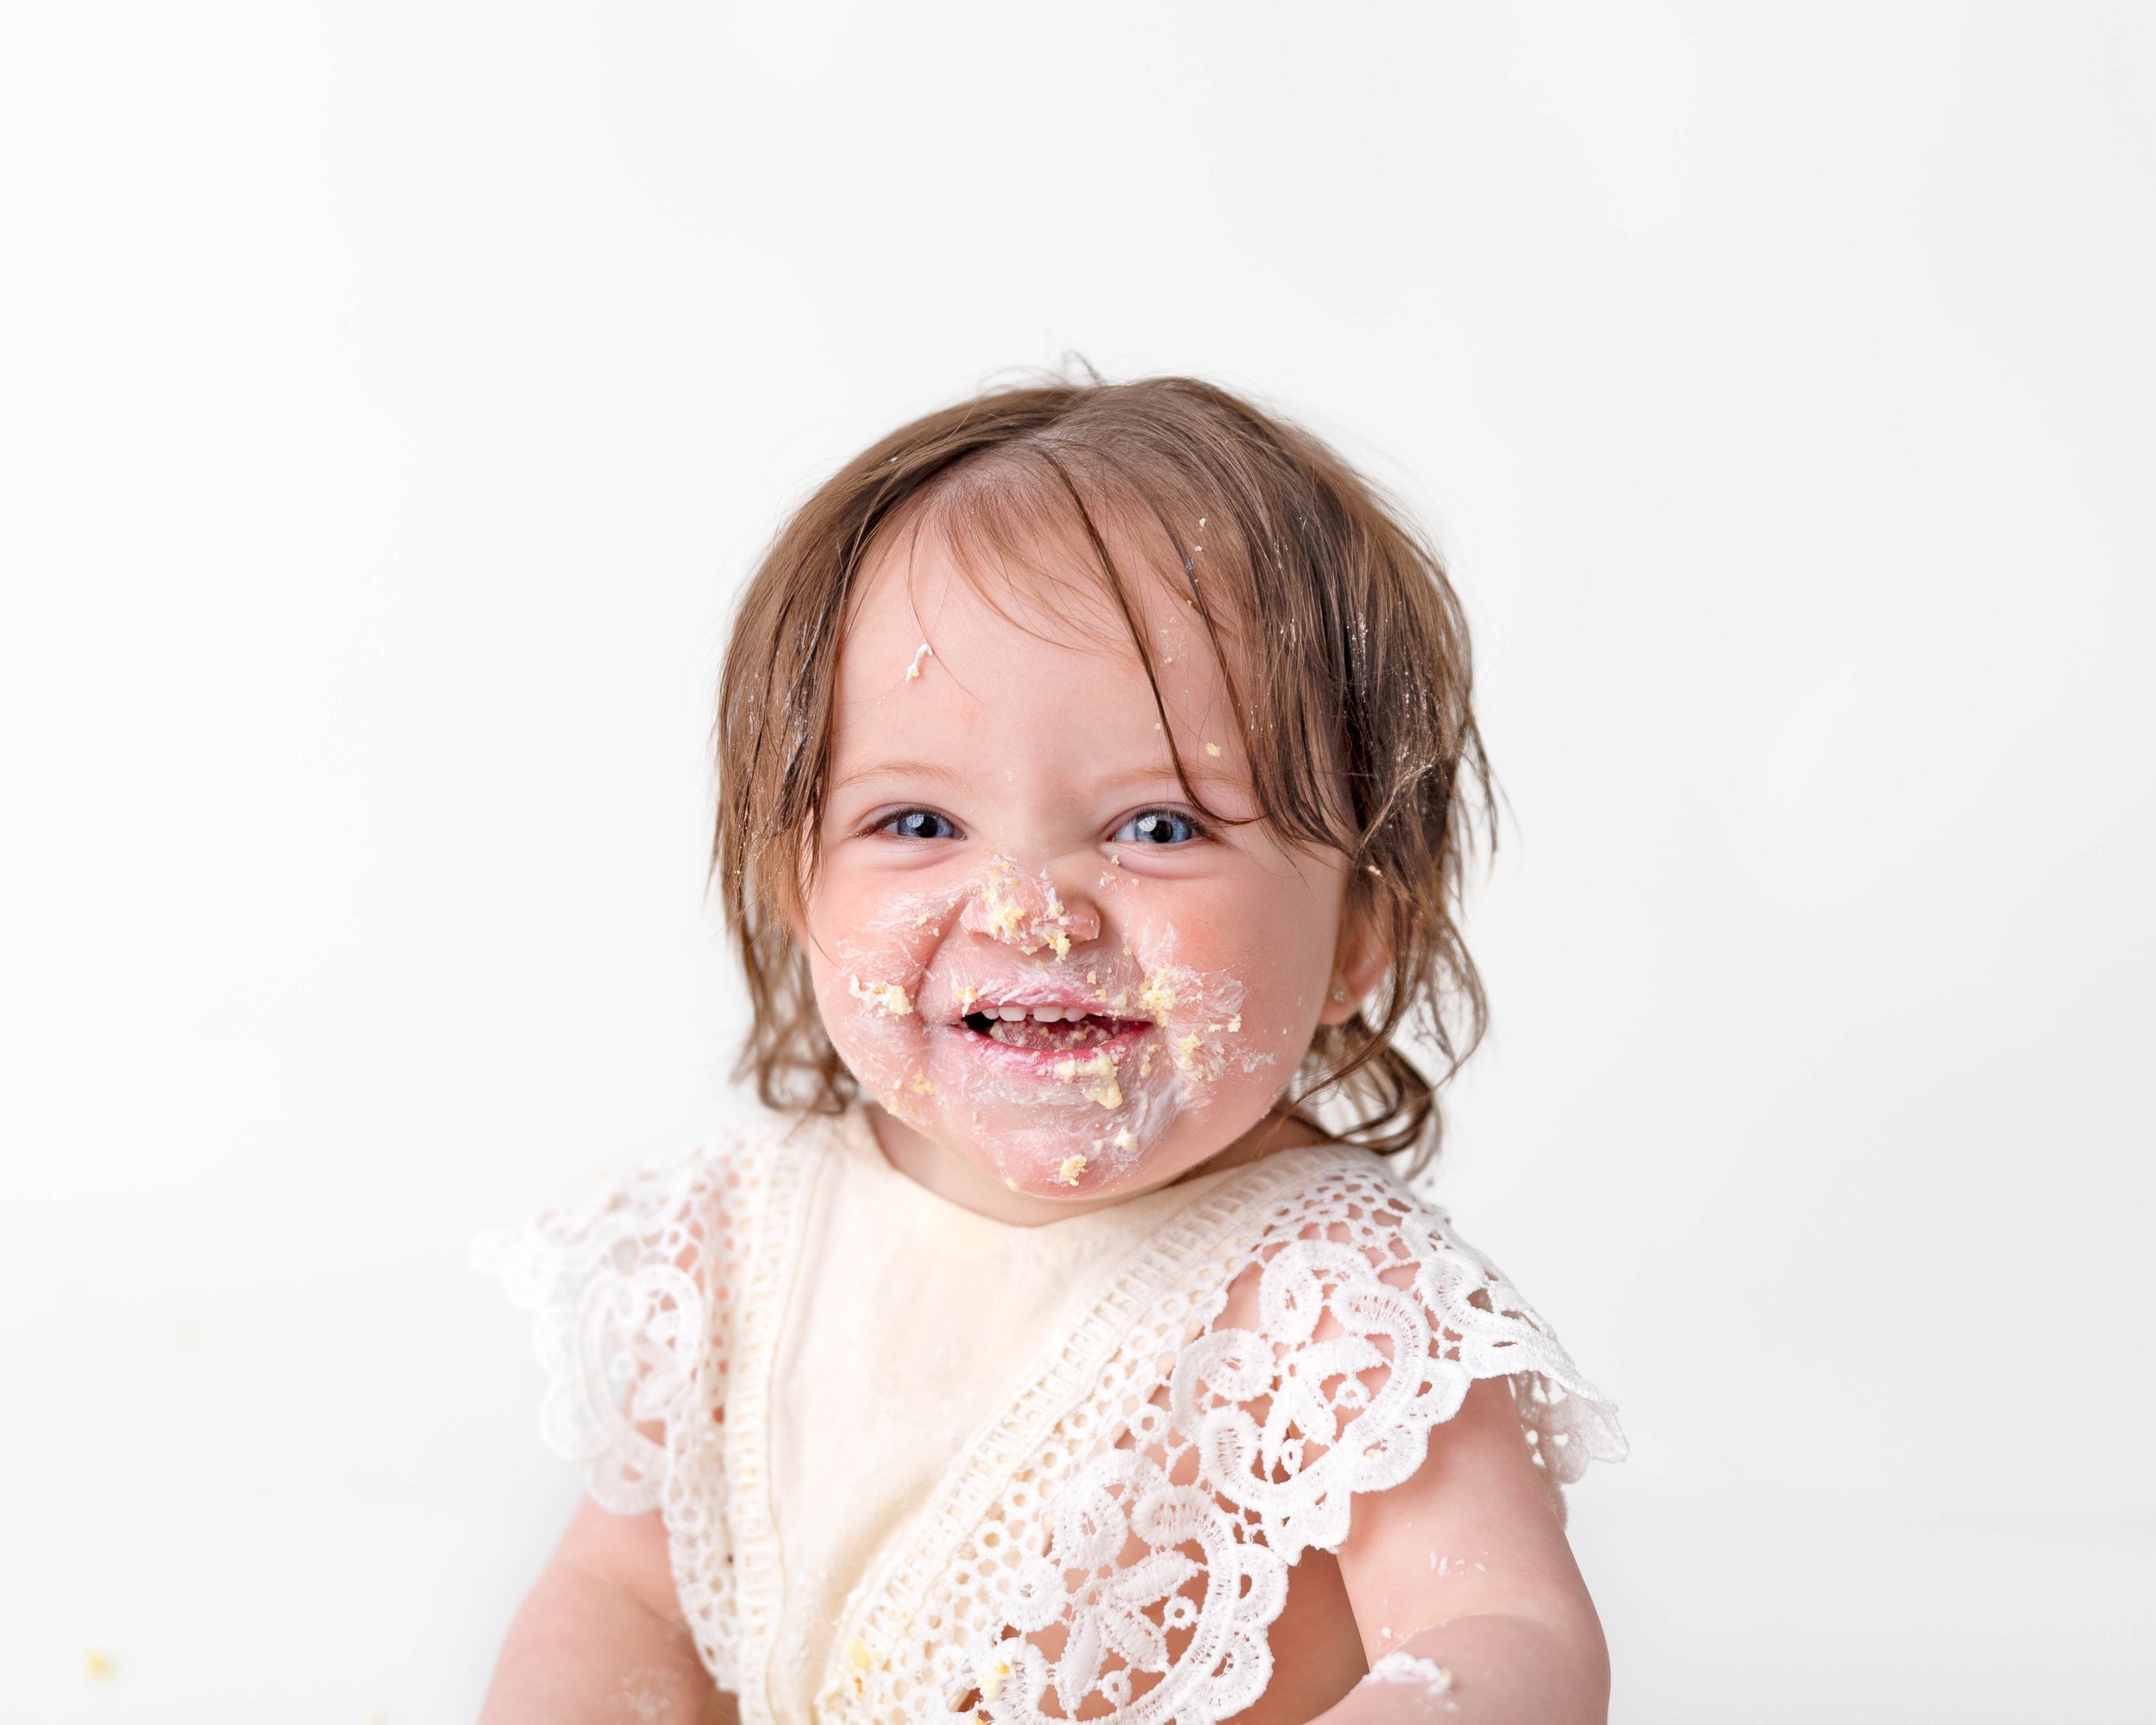 Cake-smash-one-year-old-photos-milestone-images-newborn-photography-baby-girl-spokane-washington-6.jpg